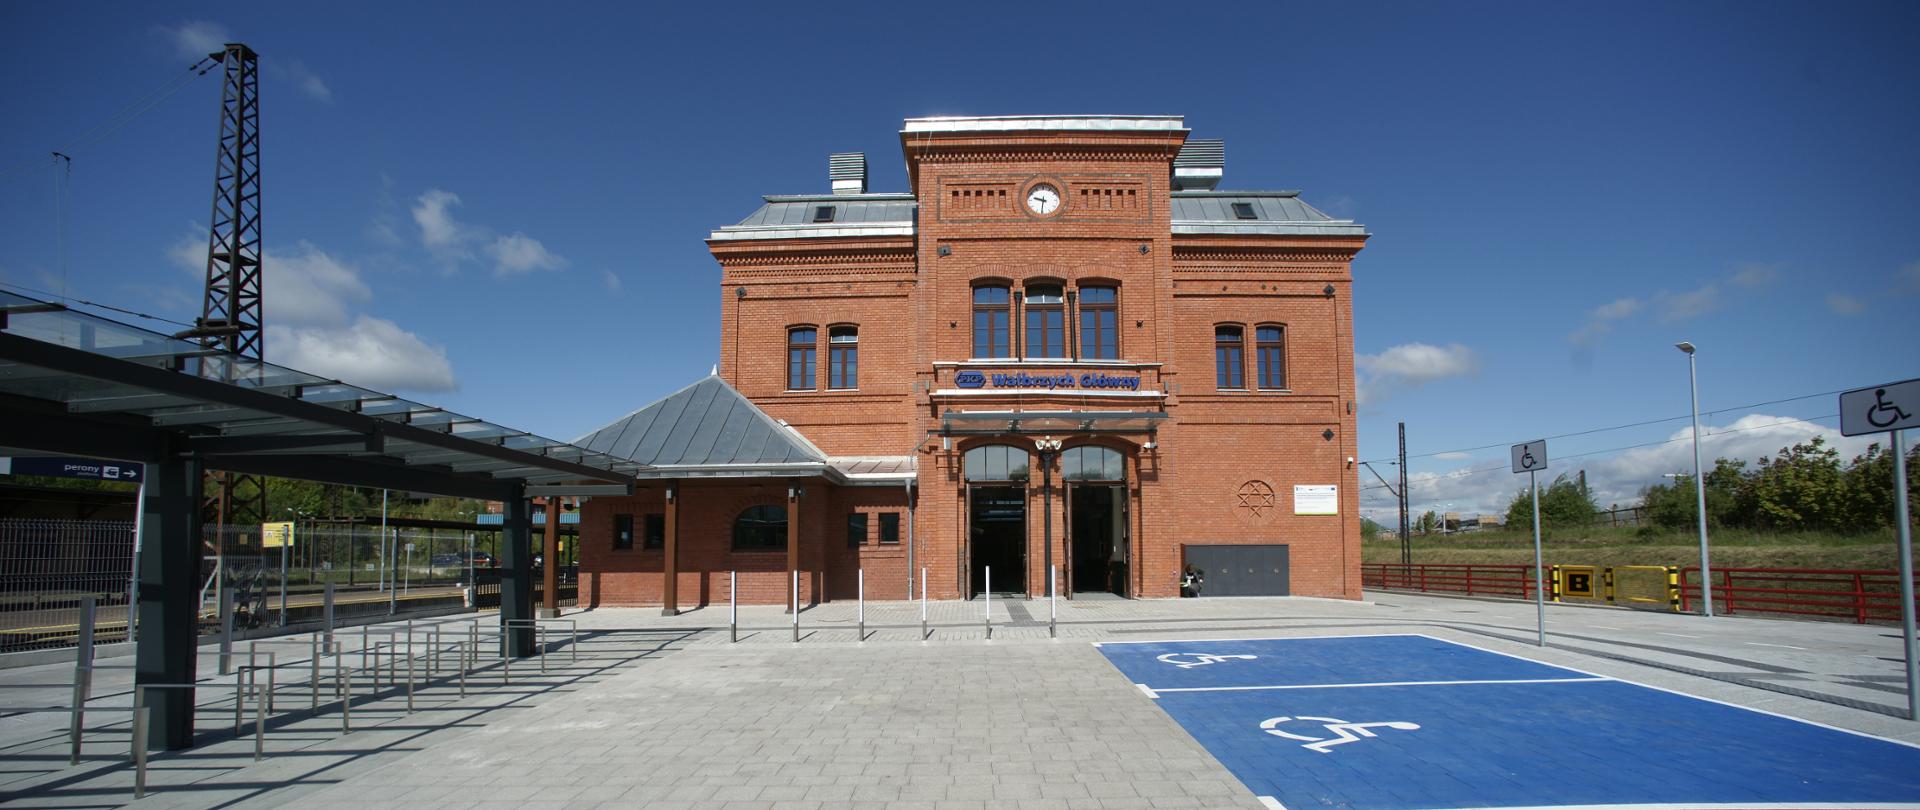 Dworzec Wałbrzych Główny otwarty po modernizacji